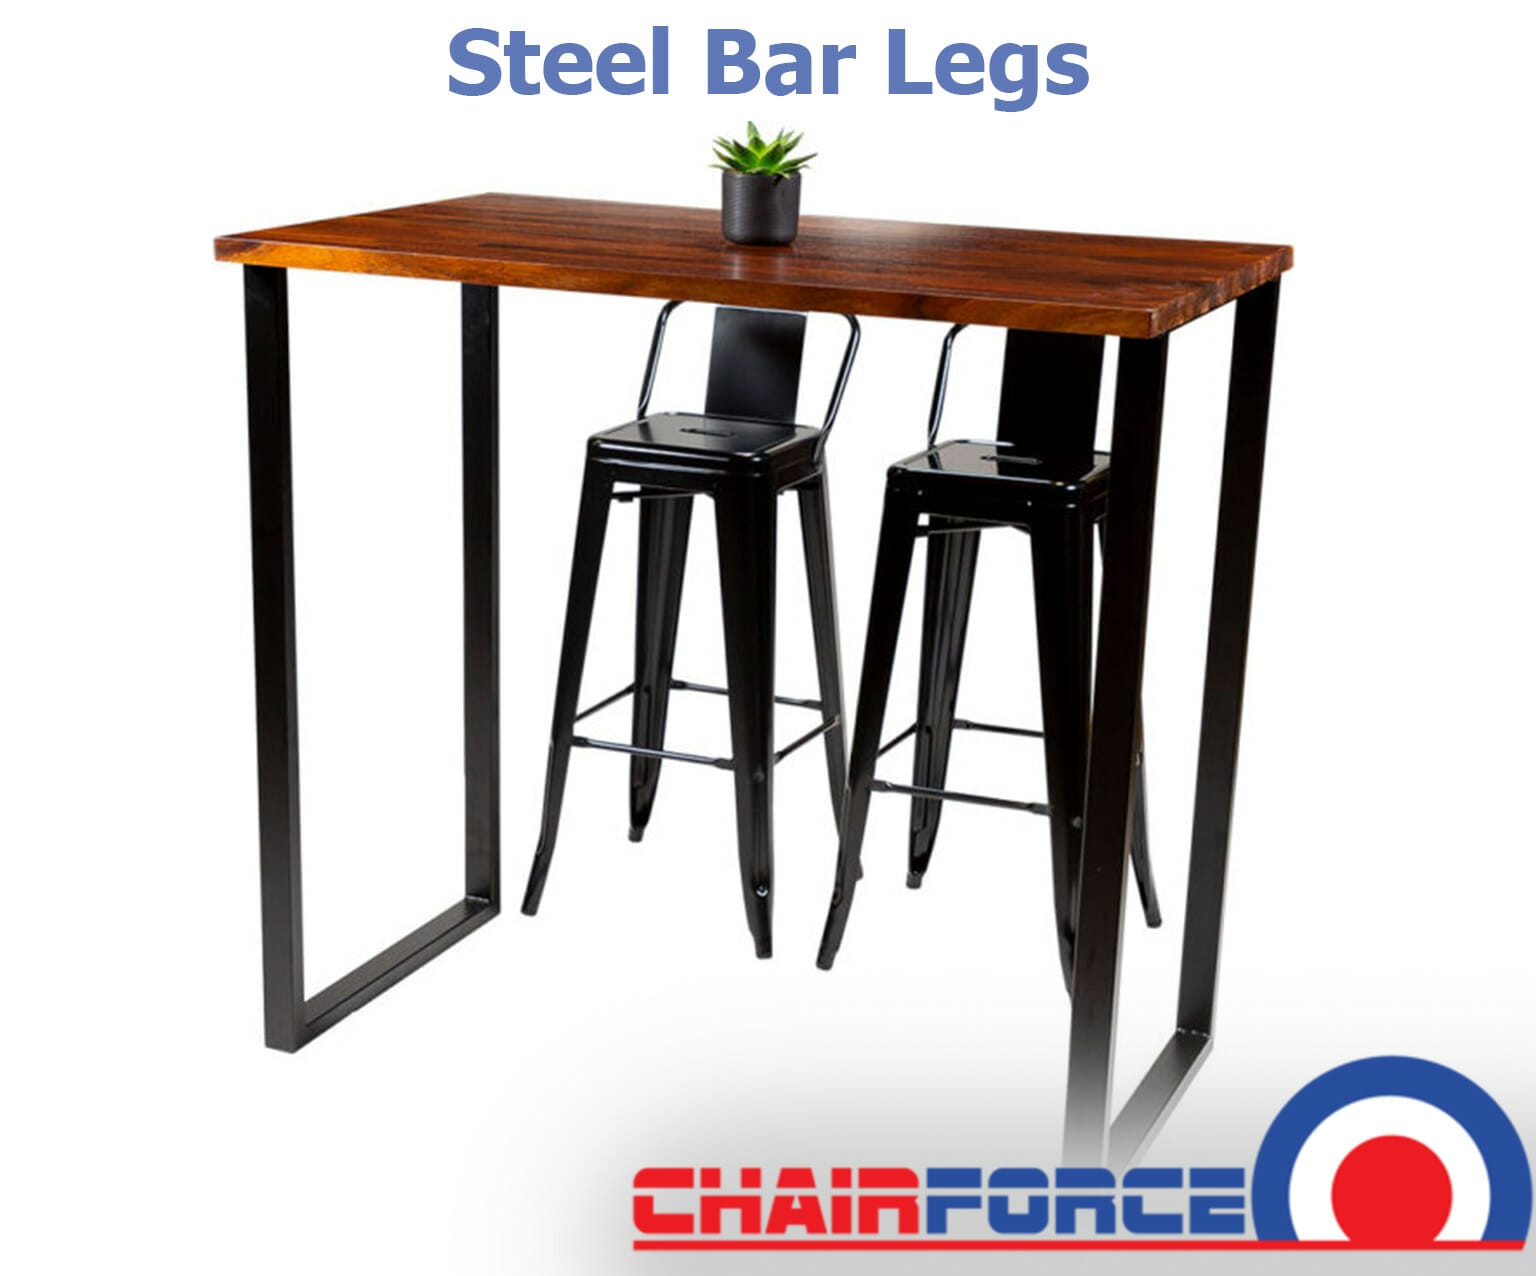 Best steel bar legs